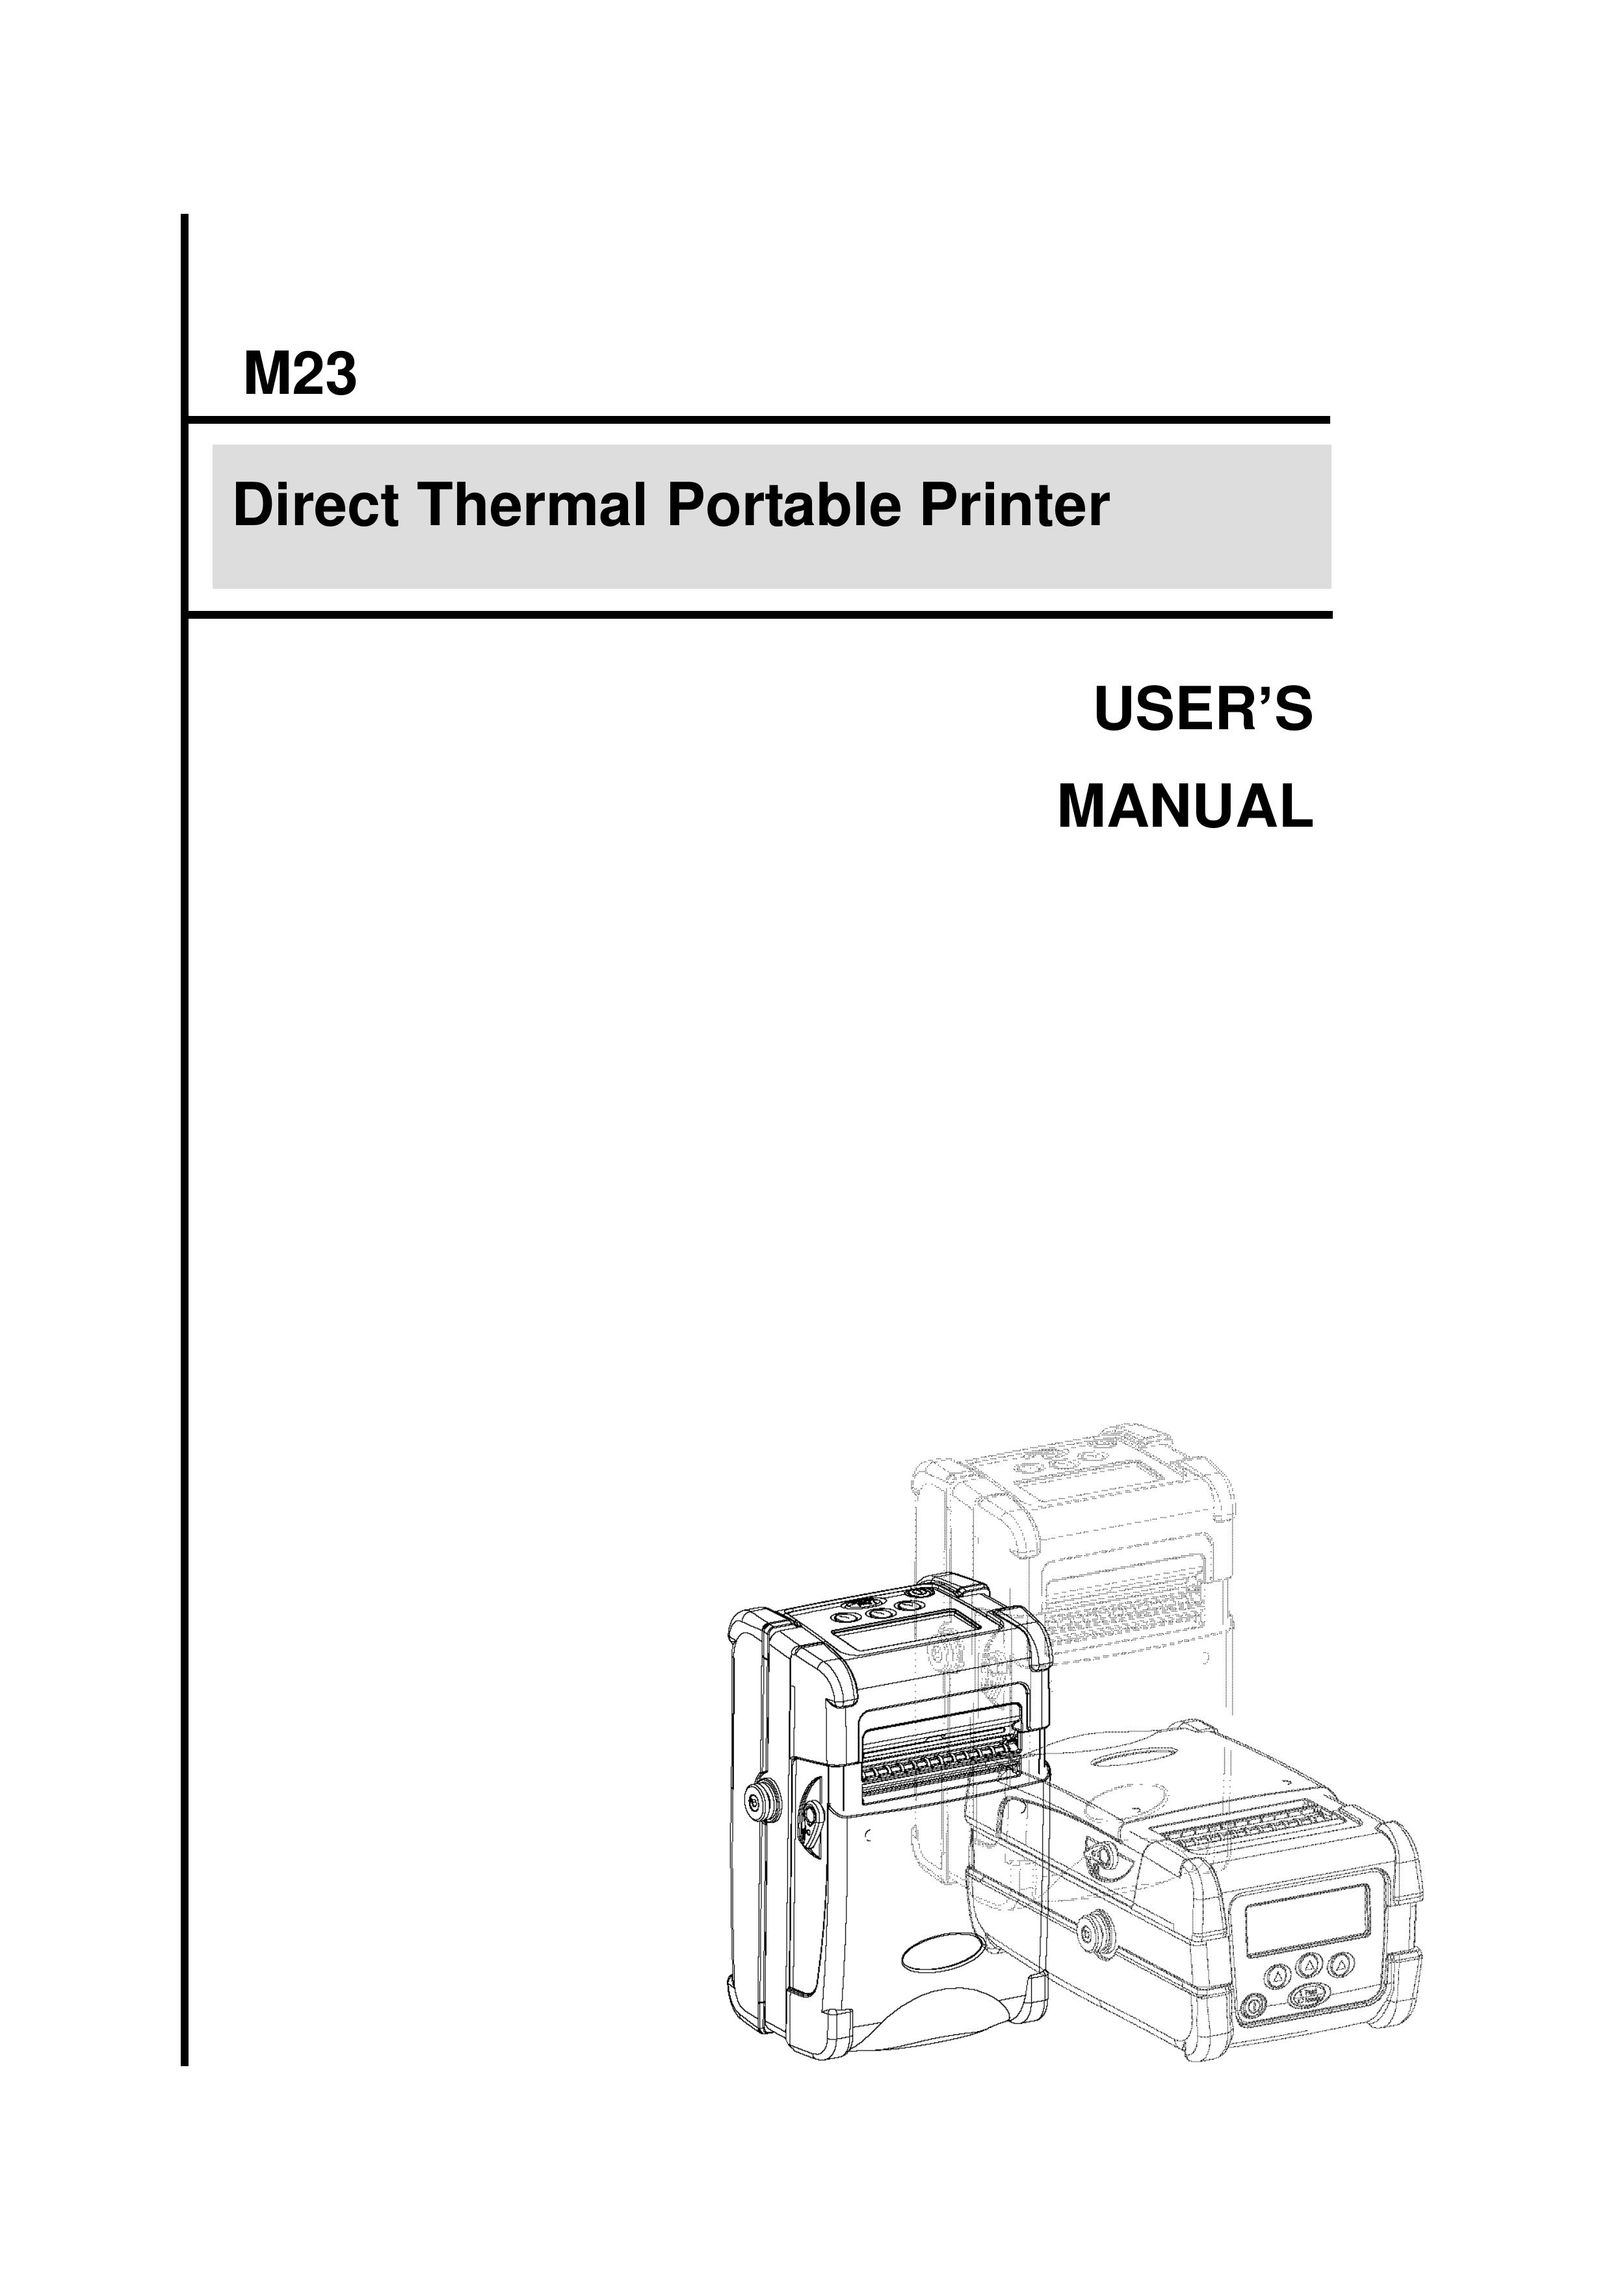 The Speaker Company M23 Printer User Manual